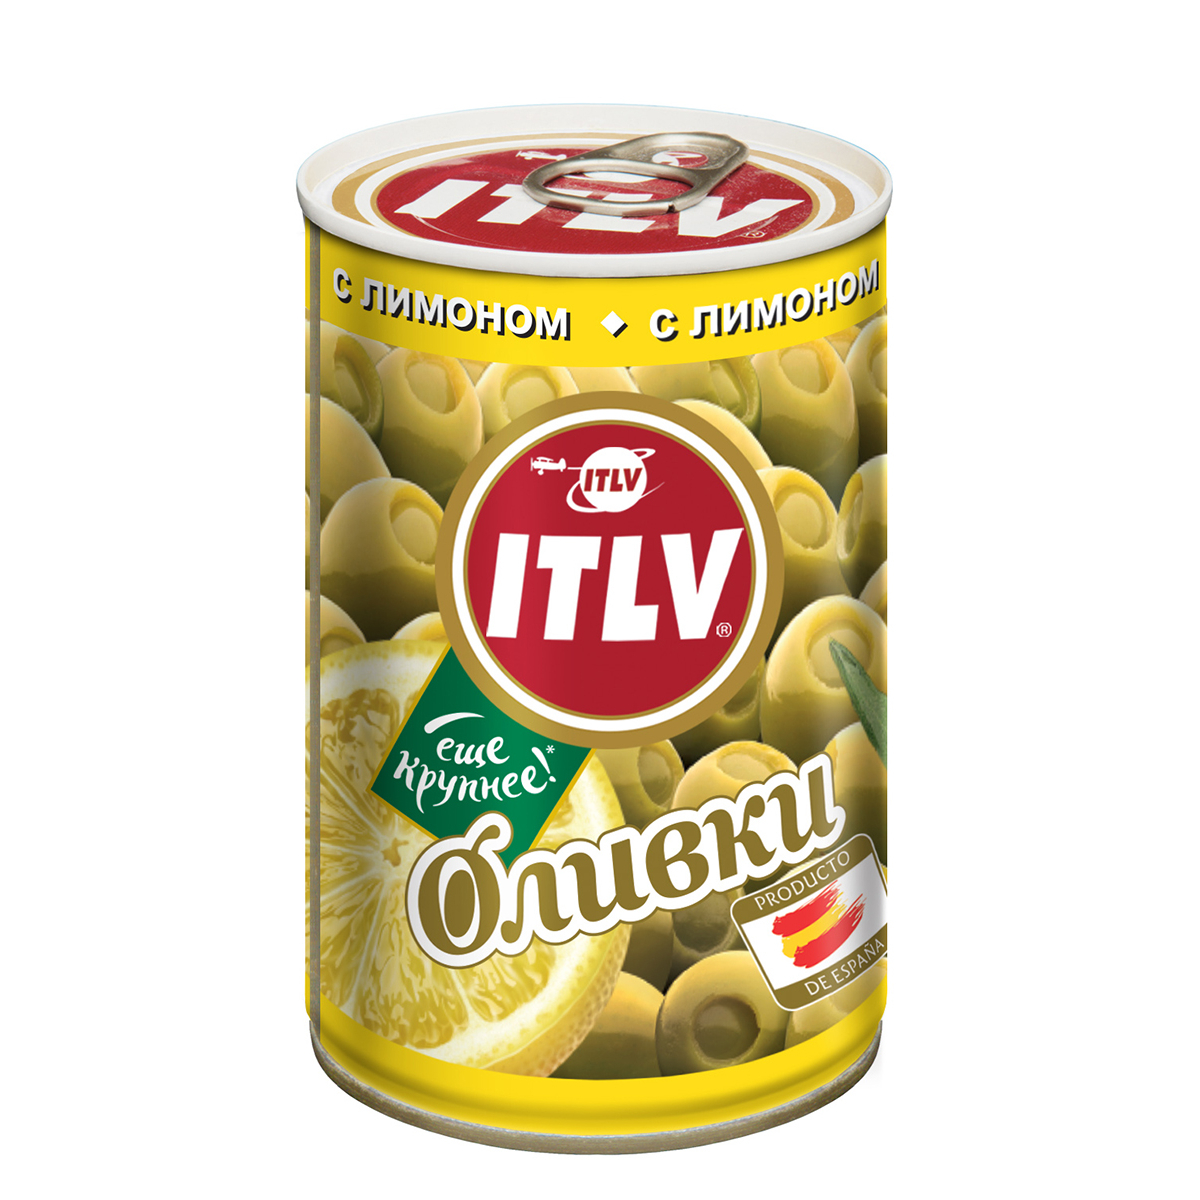 Оливки ITLV с лимоном 314 мл оливки itlv с косточкой 314 мл